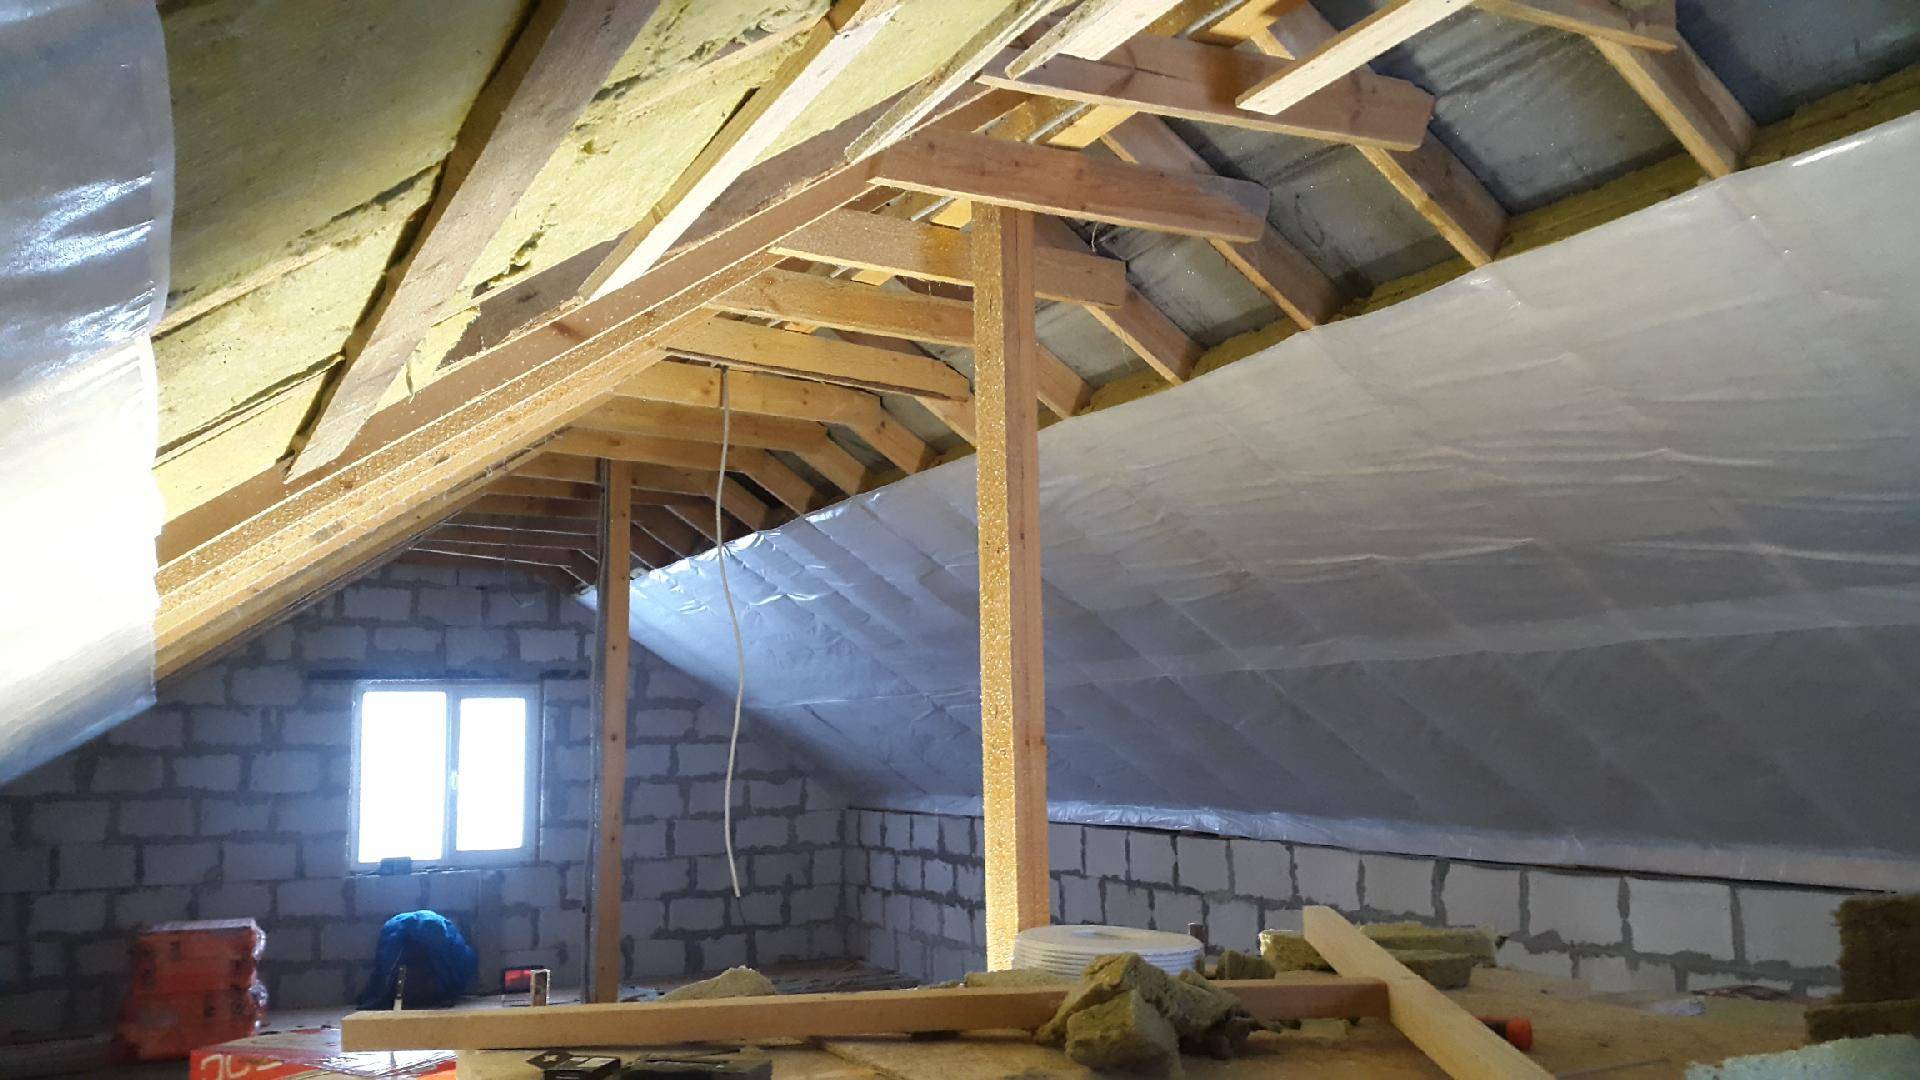 Как сделать изоляцию крыши от пара и влаги правильно?